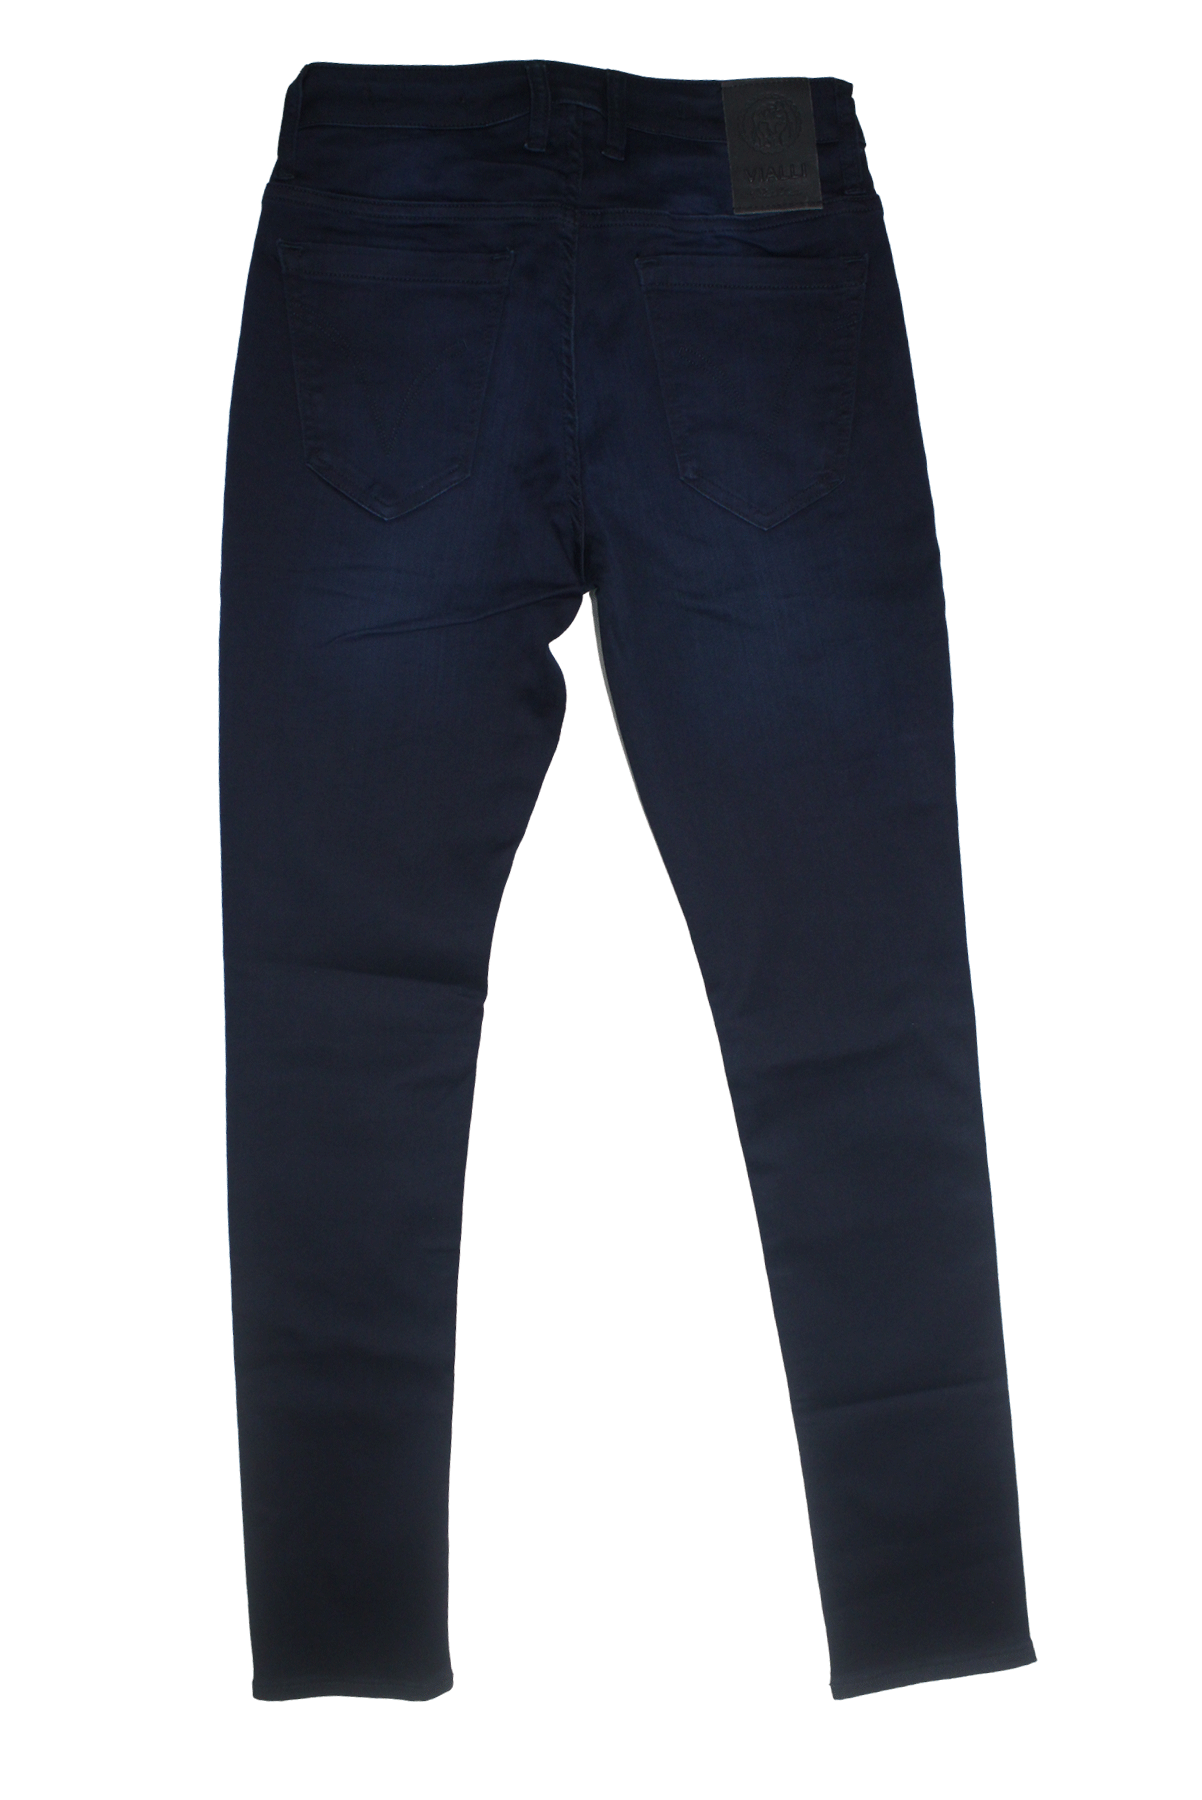 Vialli Chadric Skinny Navy Jeans